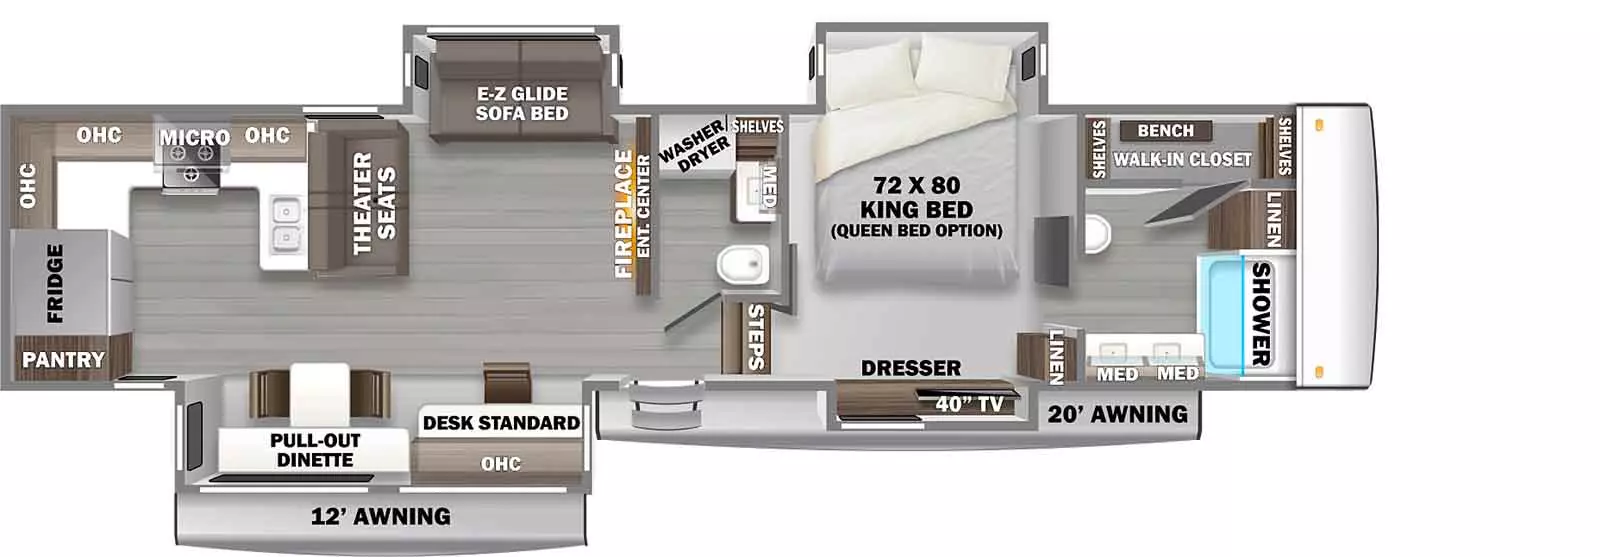 39RKFB Floorplan Image